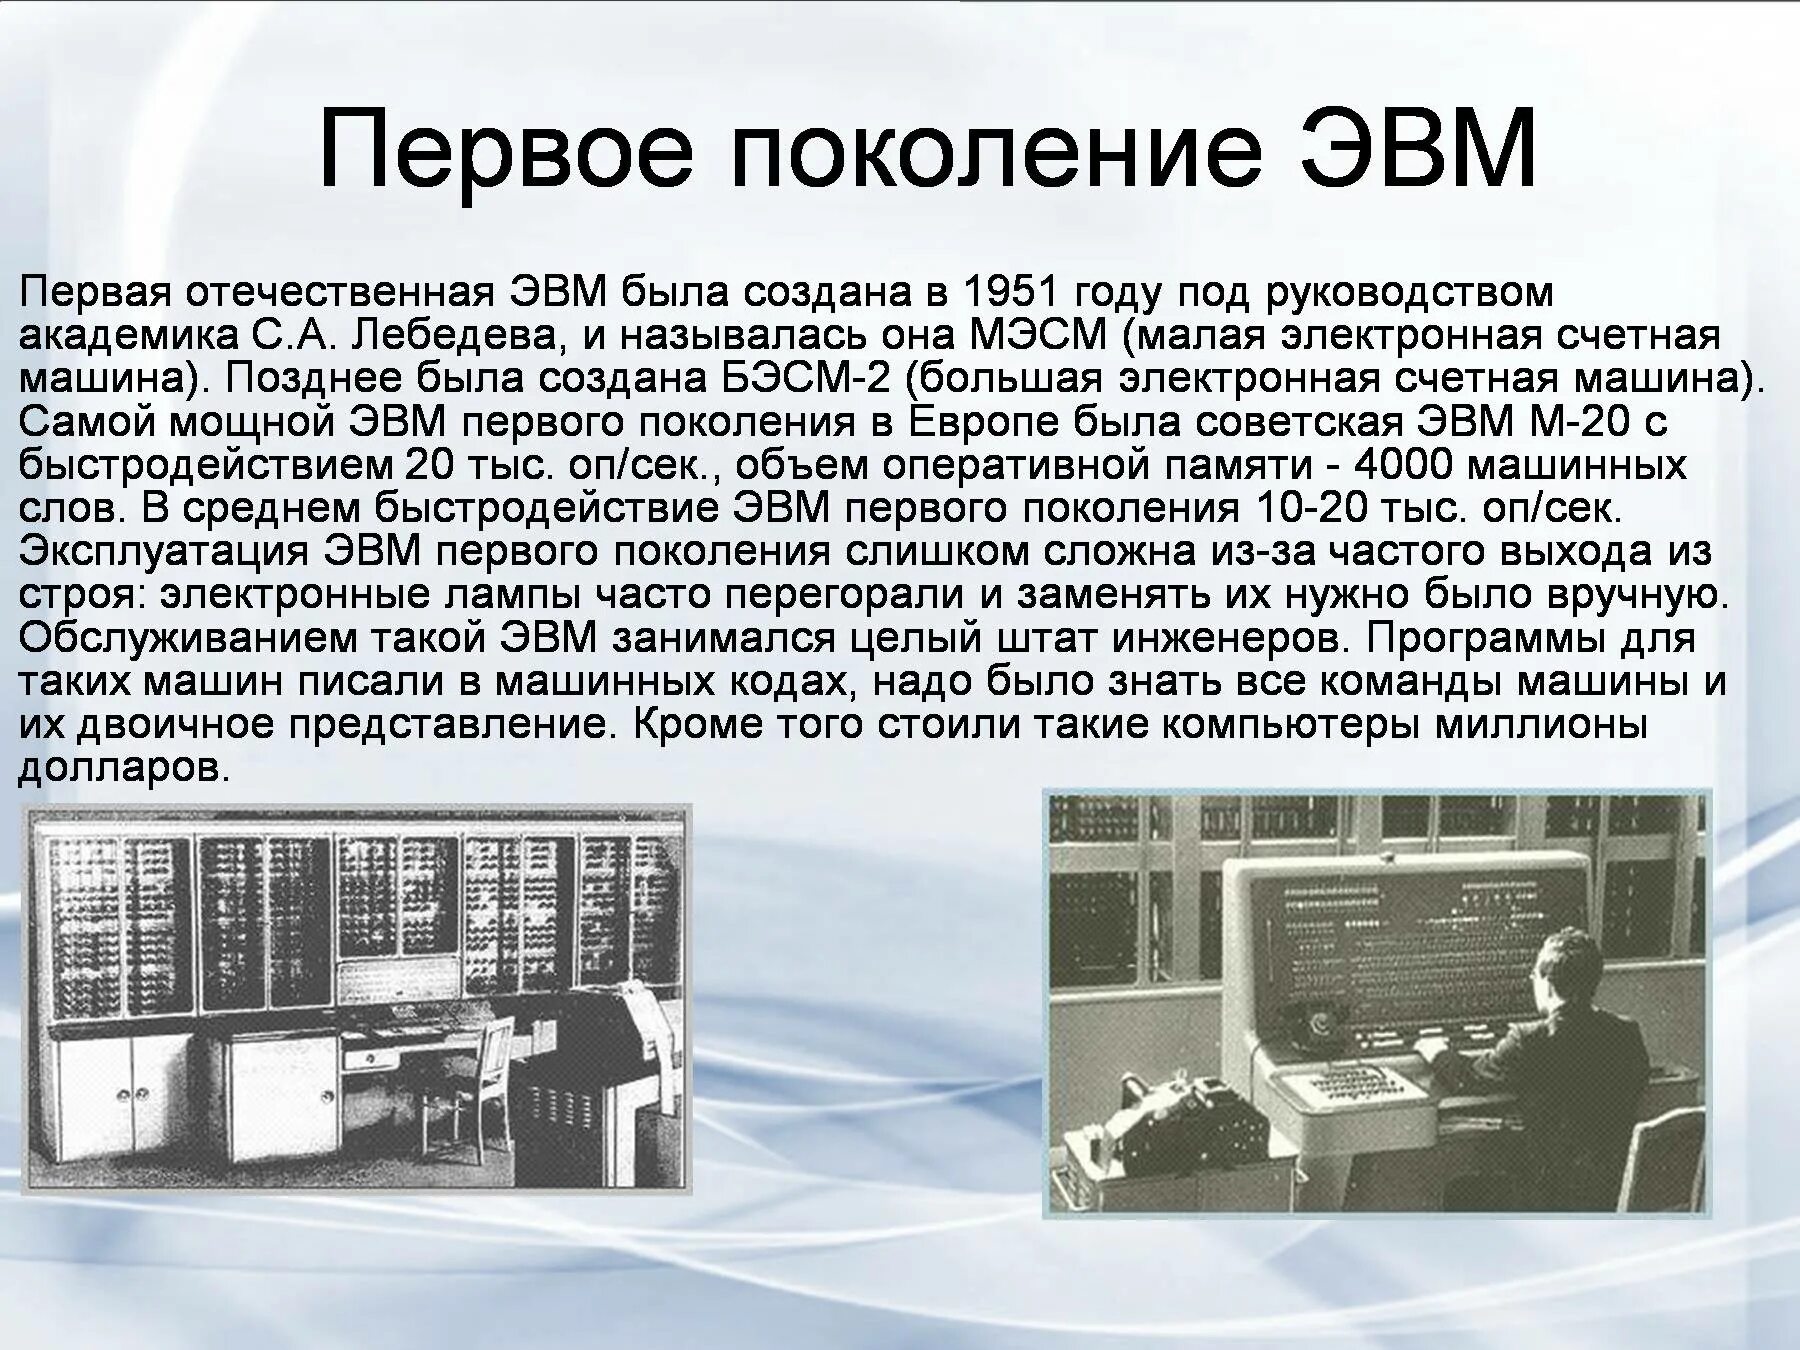 1 ое поколение. История развития вычислительной техники 3 поколения ЭВМ. Первое поколение ЭВМ. ЭВМ первого поколения. Компьютеры второго поколения.